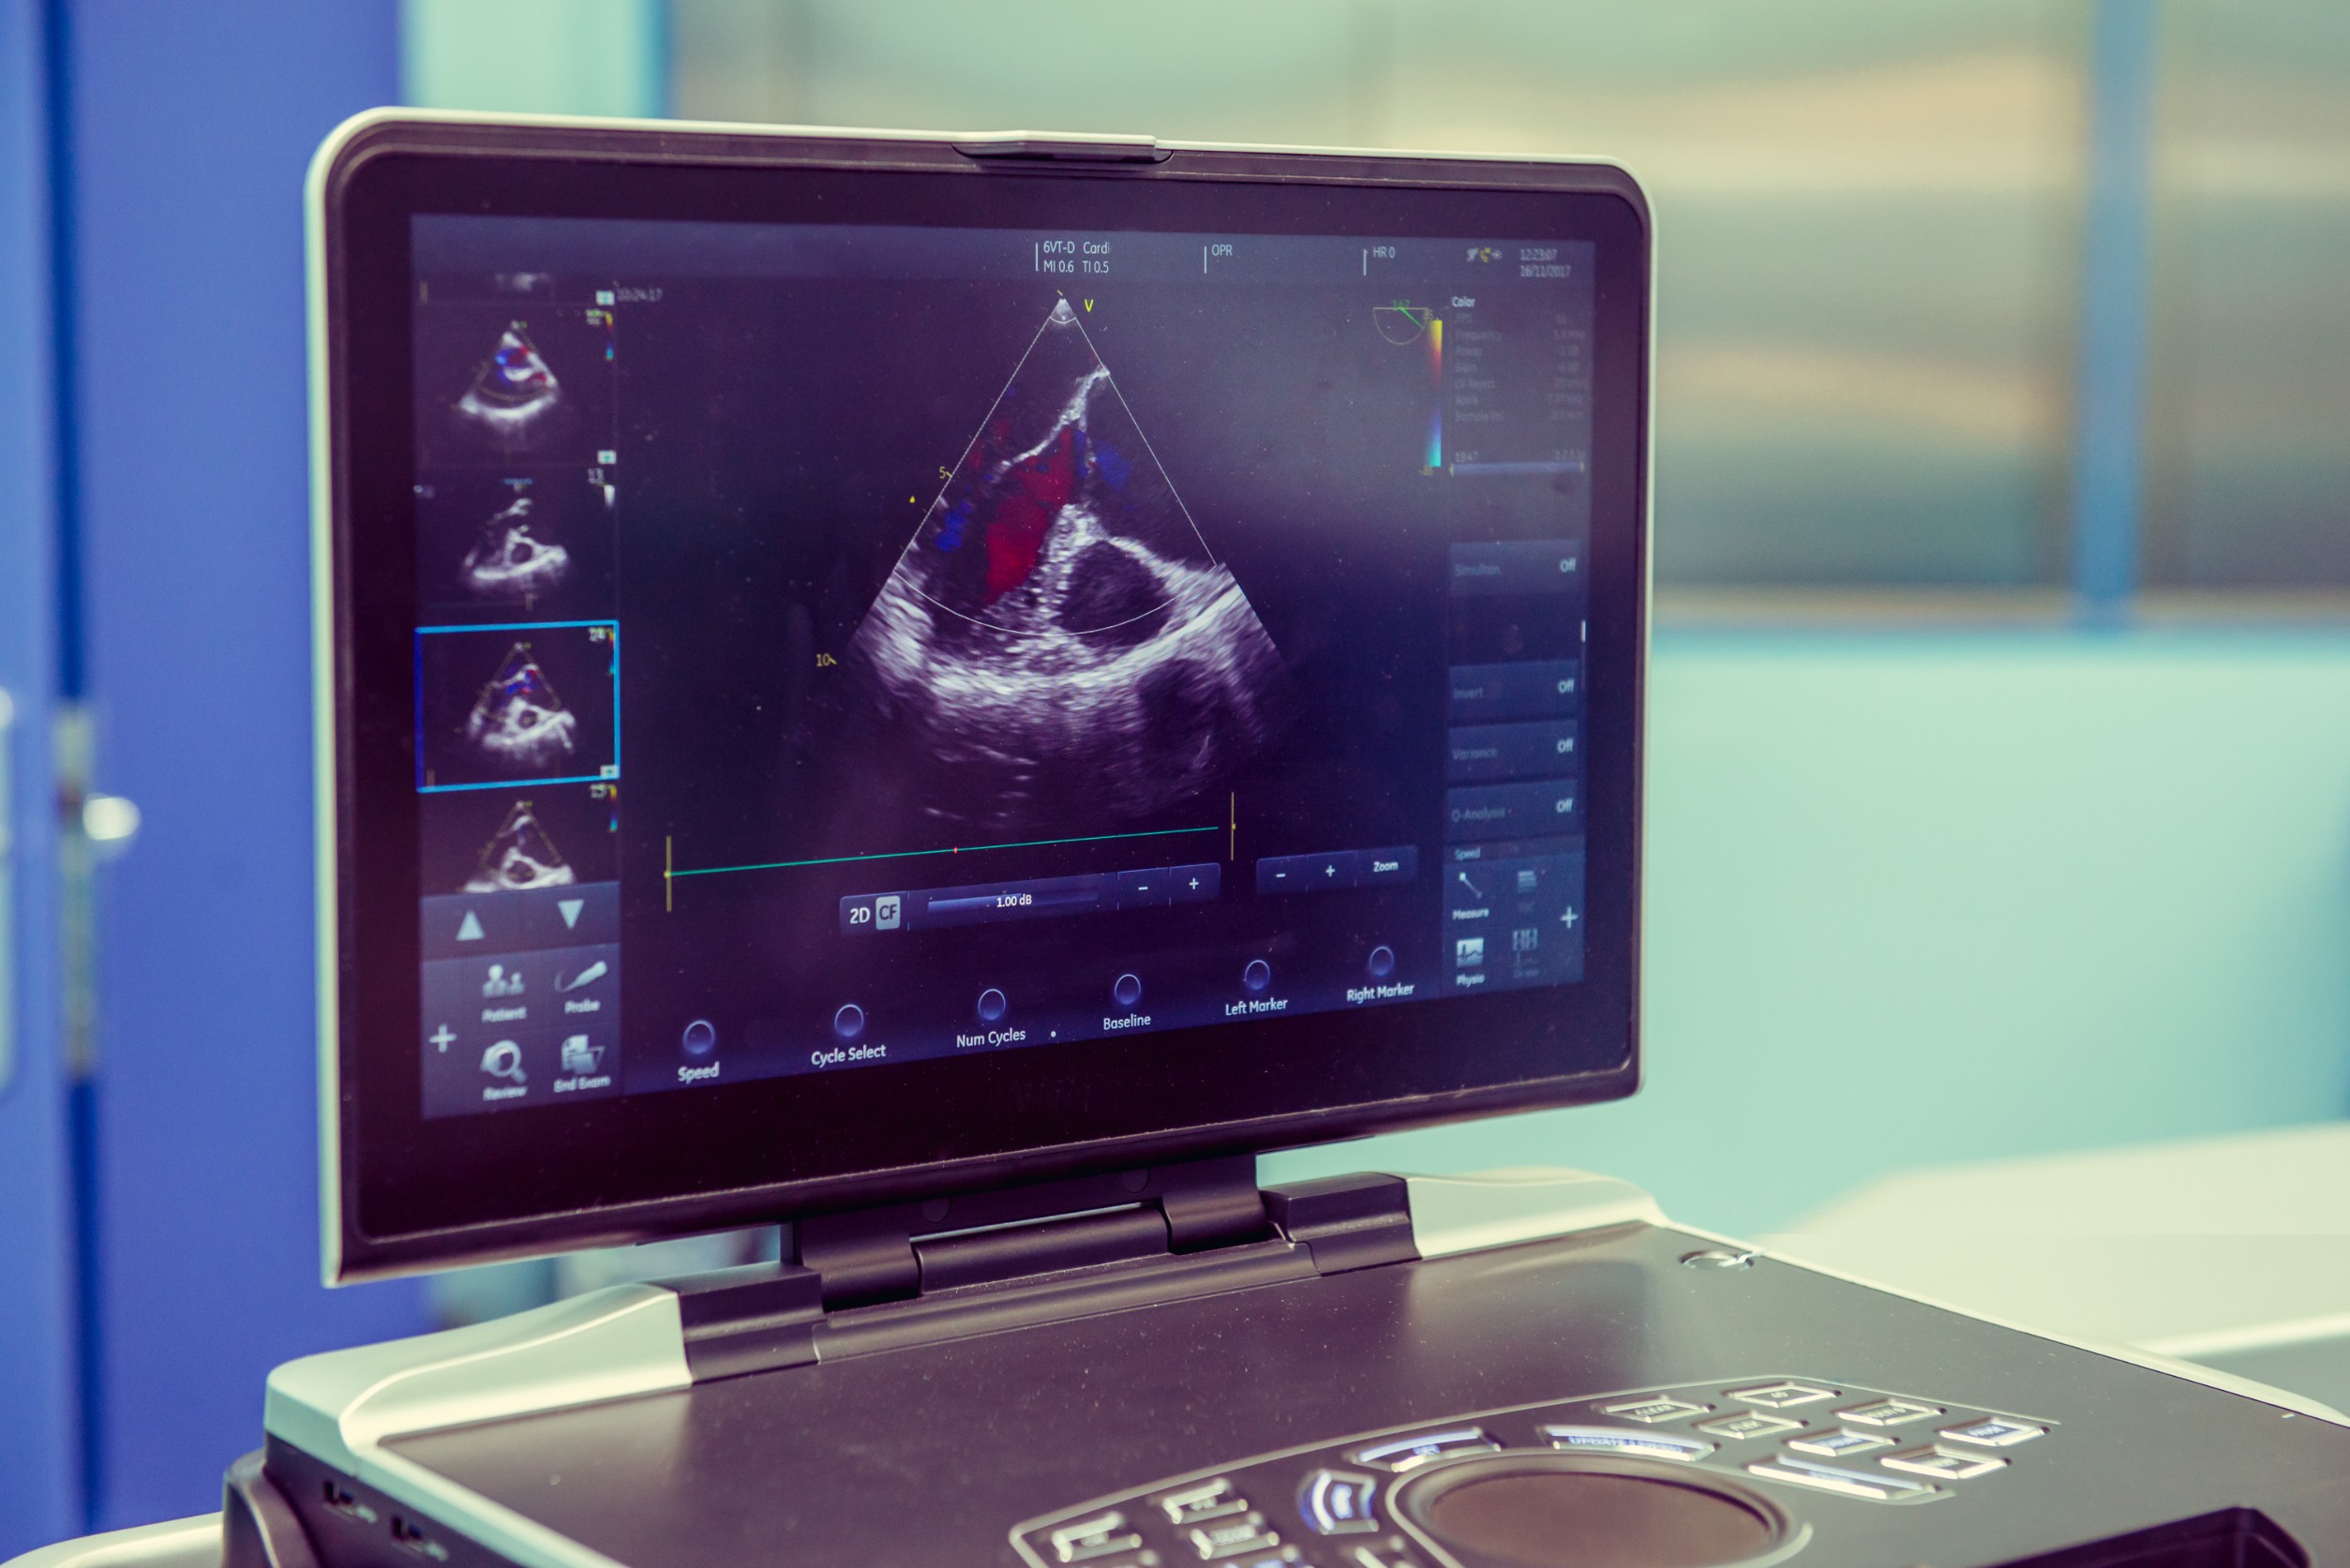 Imagen: La inteligencia artificial automatiza el diagnóstico de la enfermedad de la válvula cardíaca grave (Fotografía cortesía de 123RF)